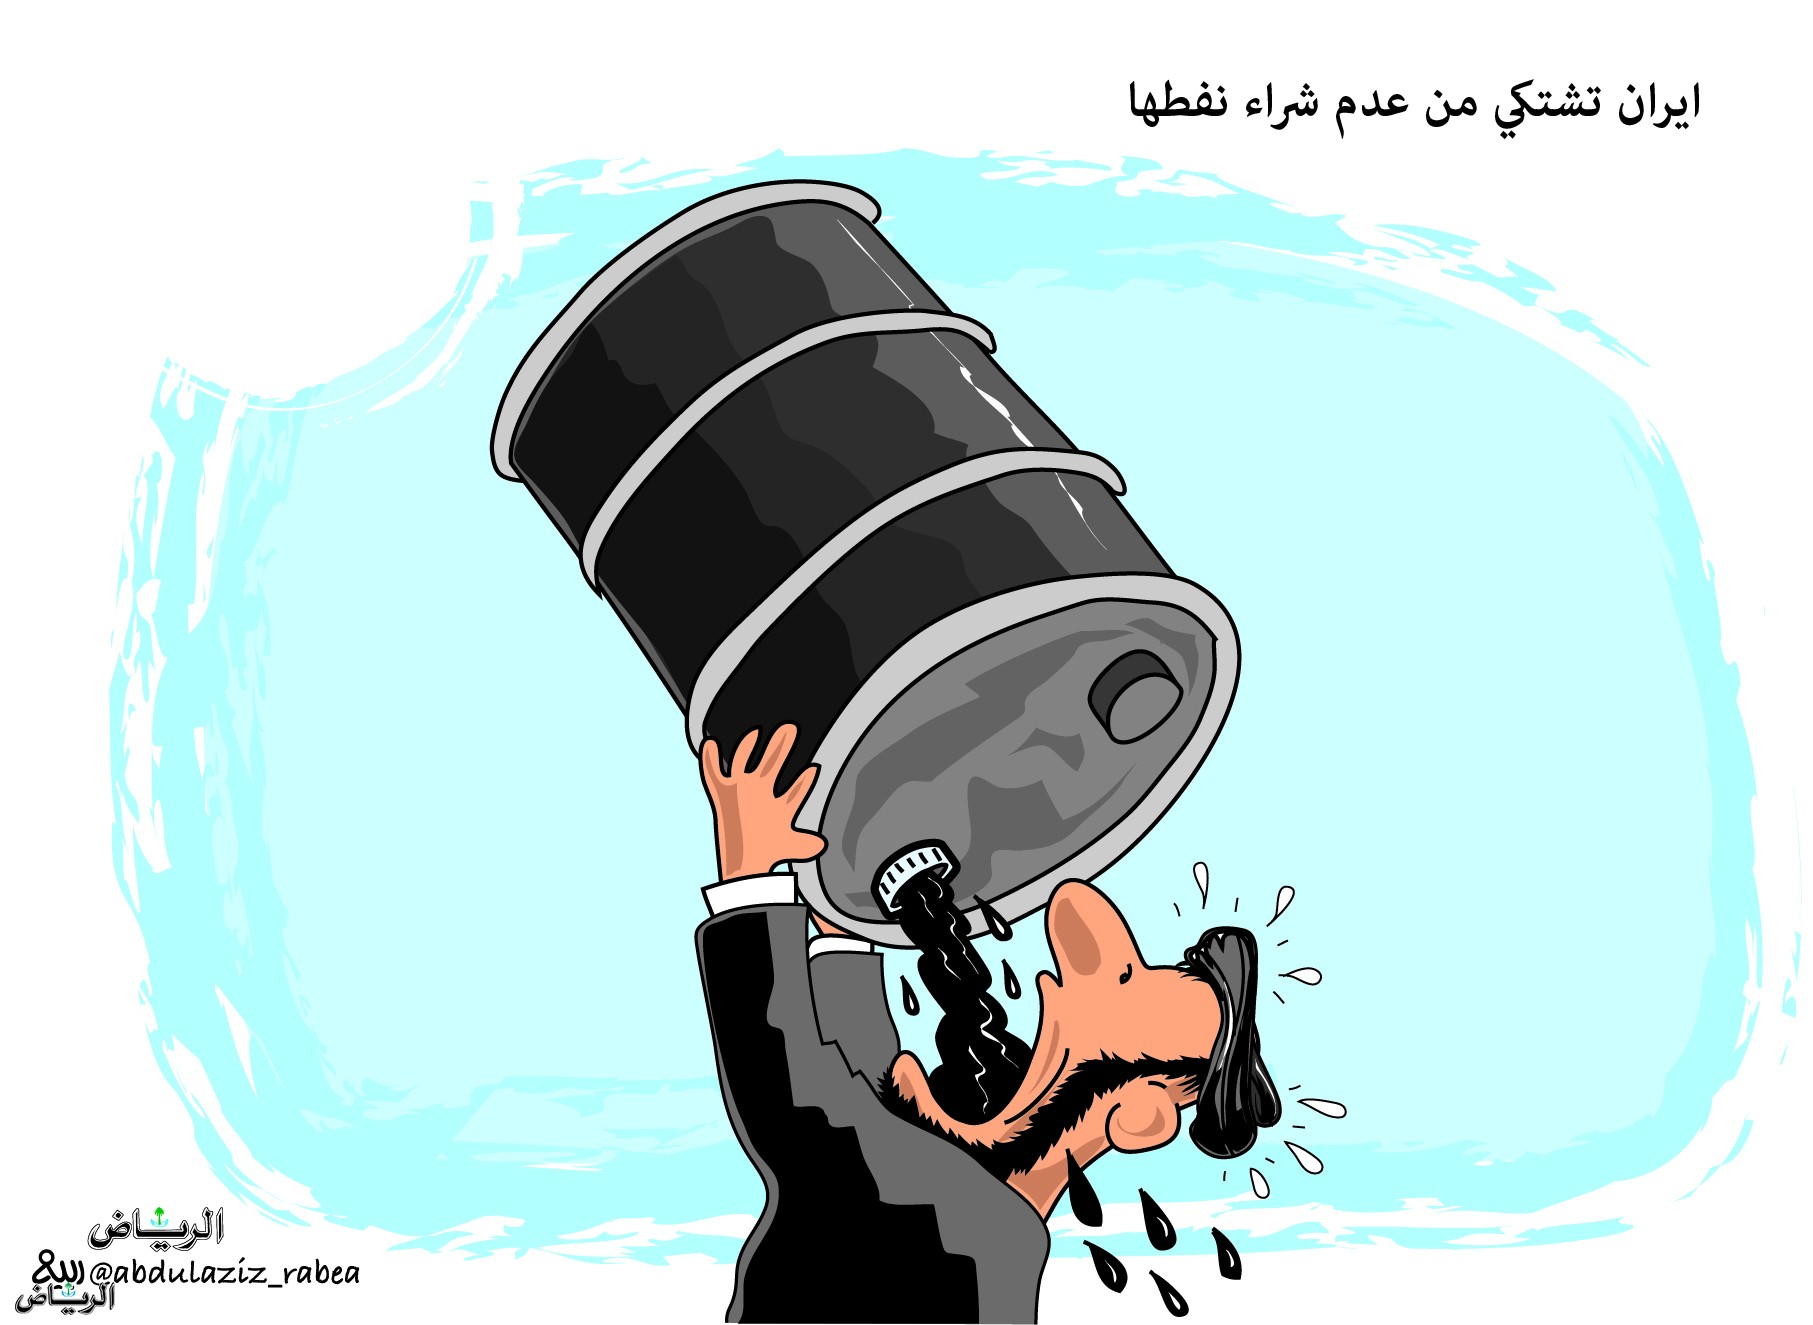 איראן שותה את הנפט שלה